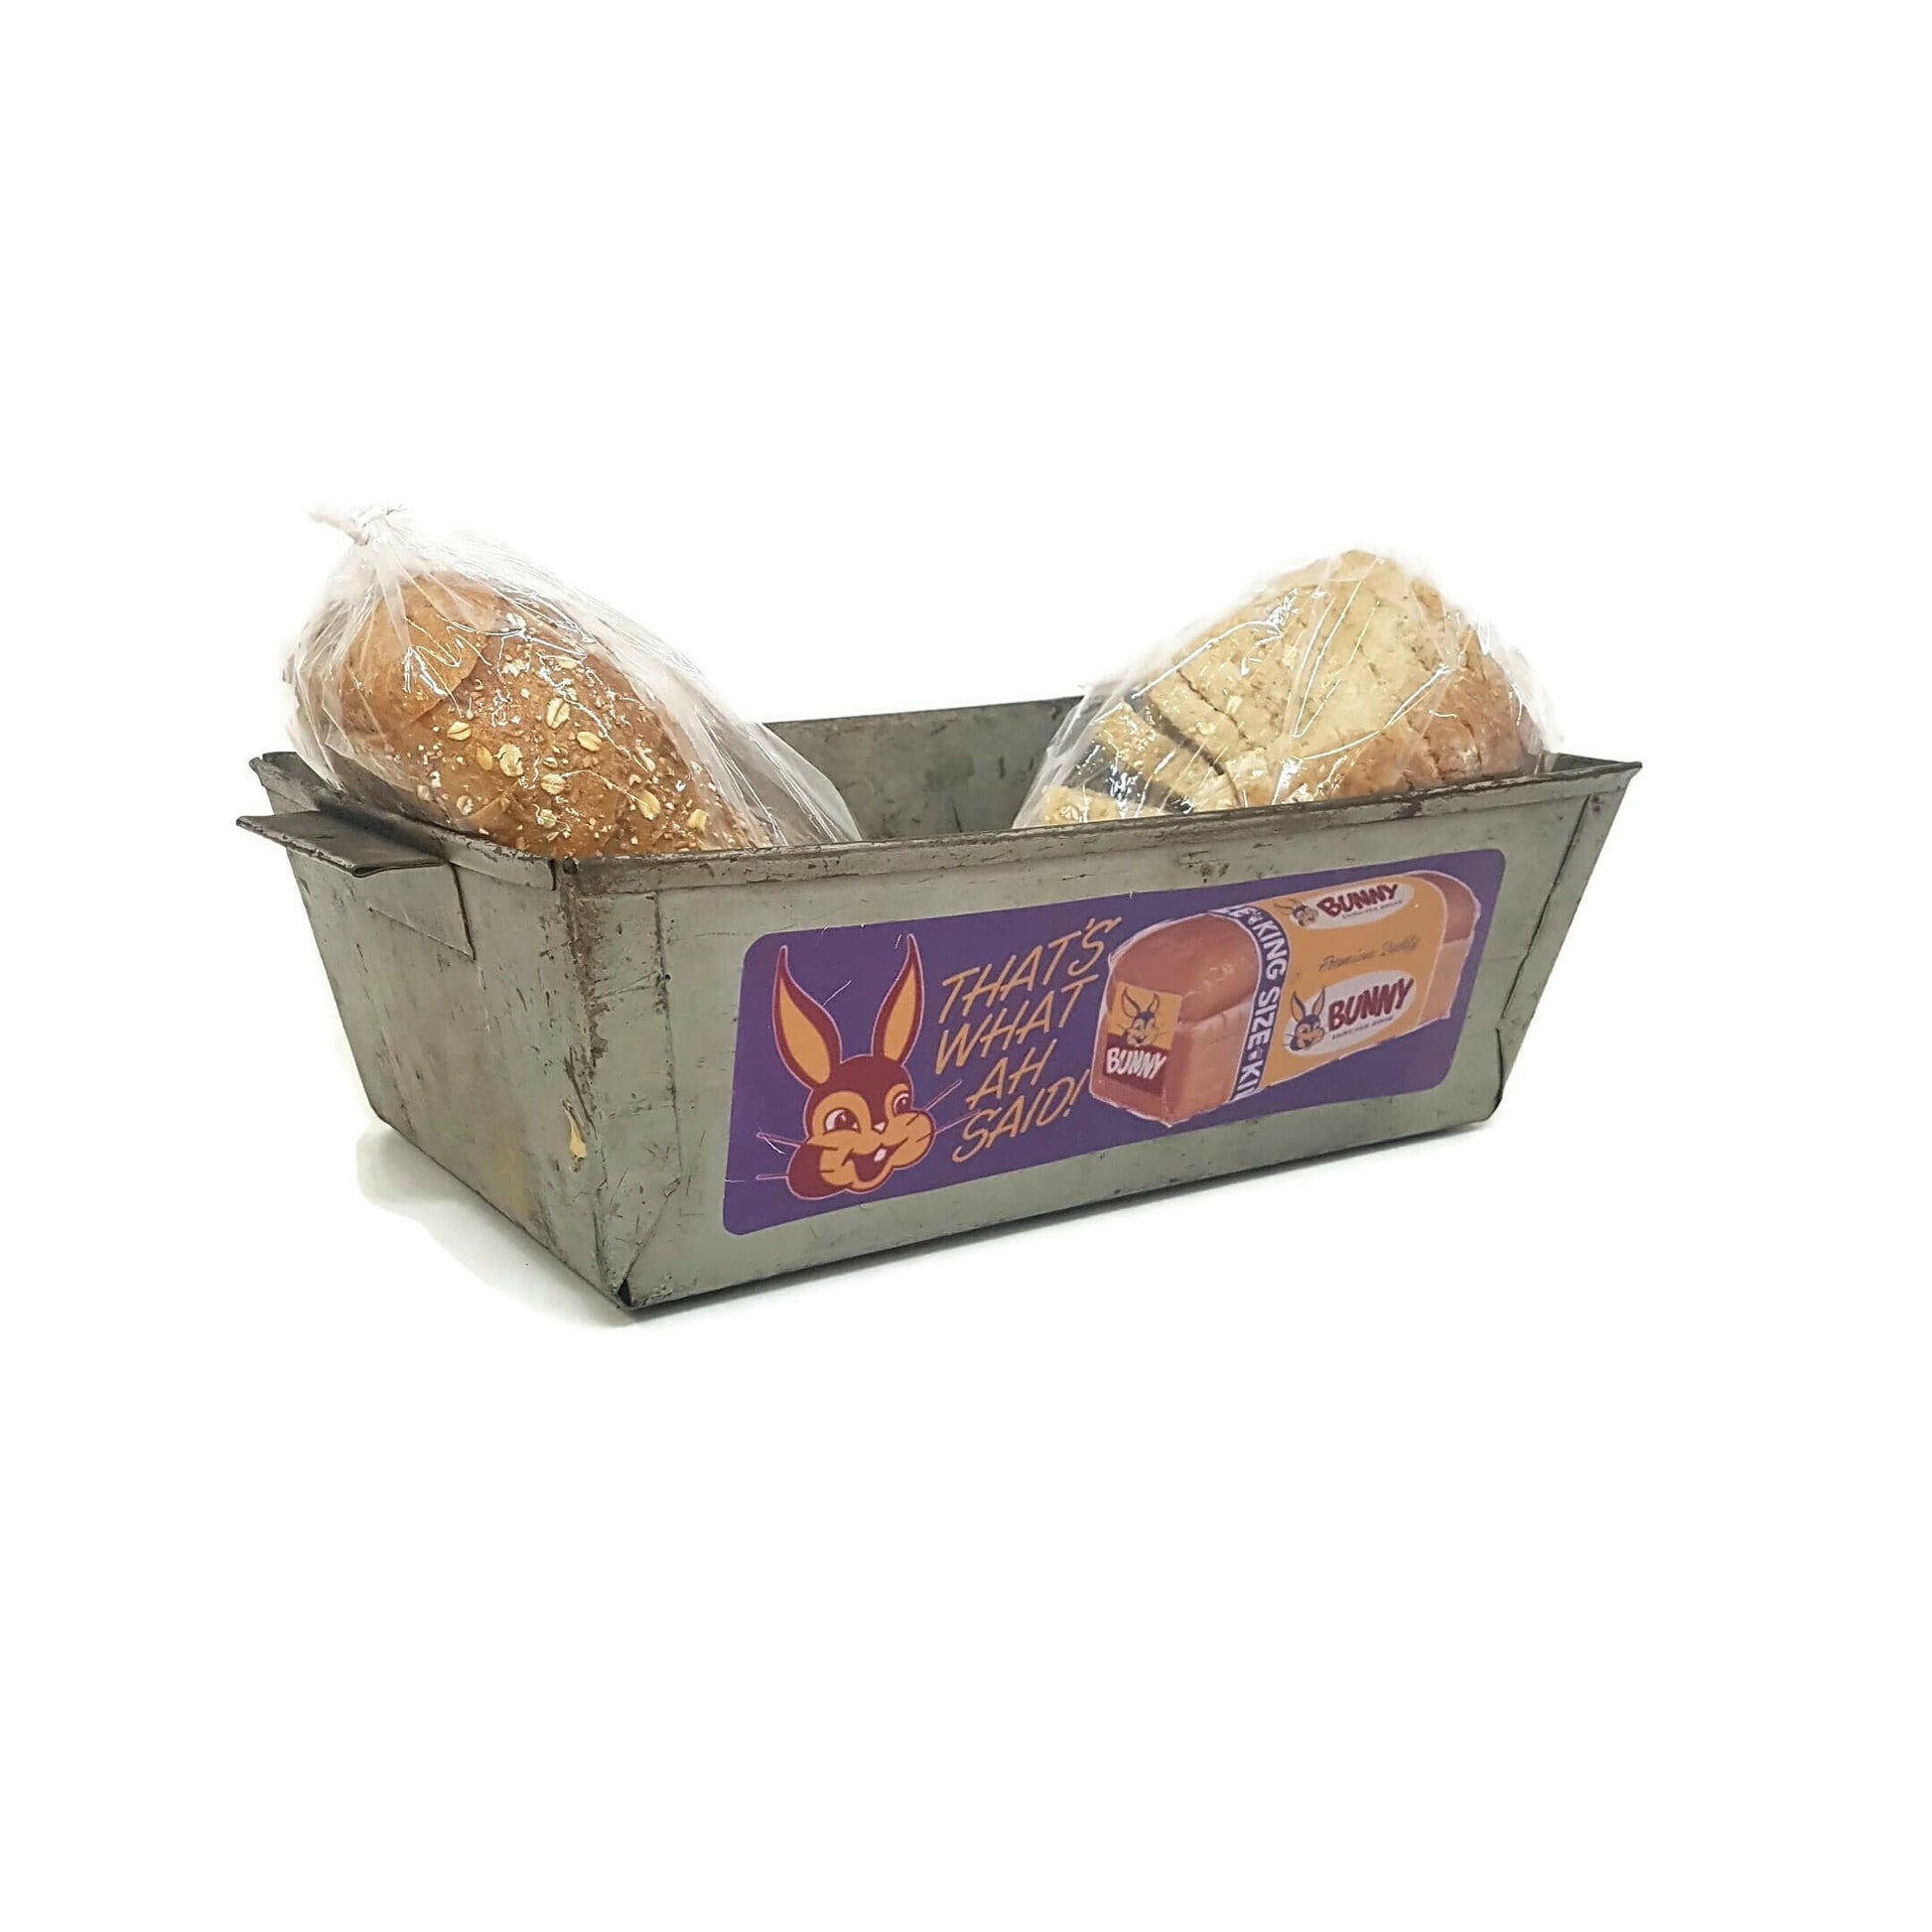 antique bin industrial metal box or basket primitive bunny bread box